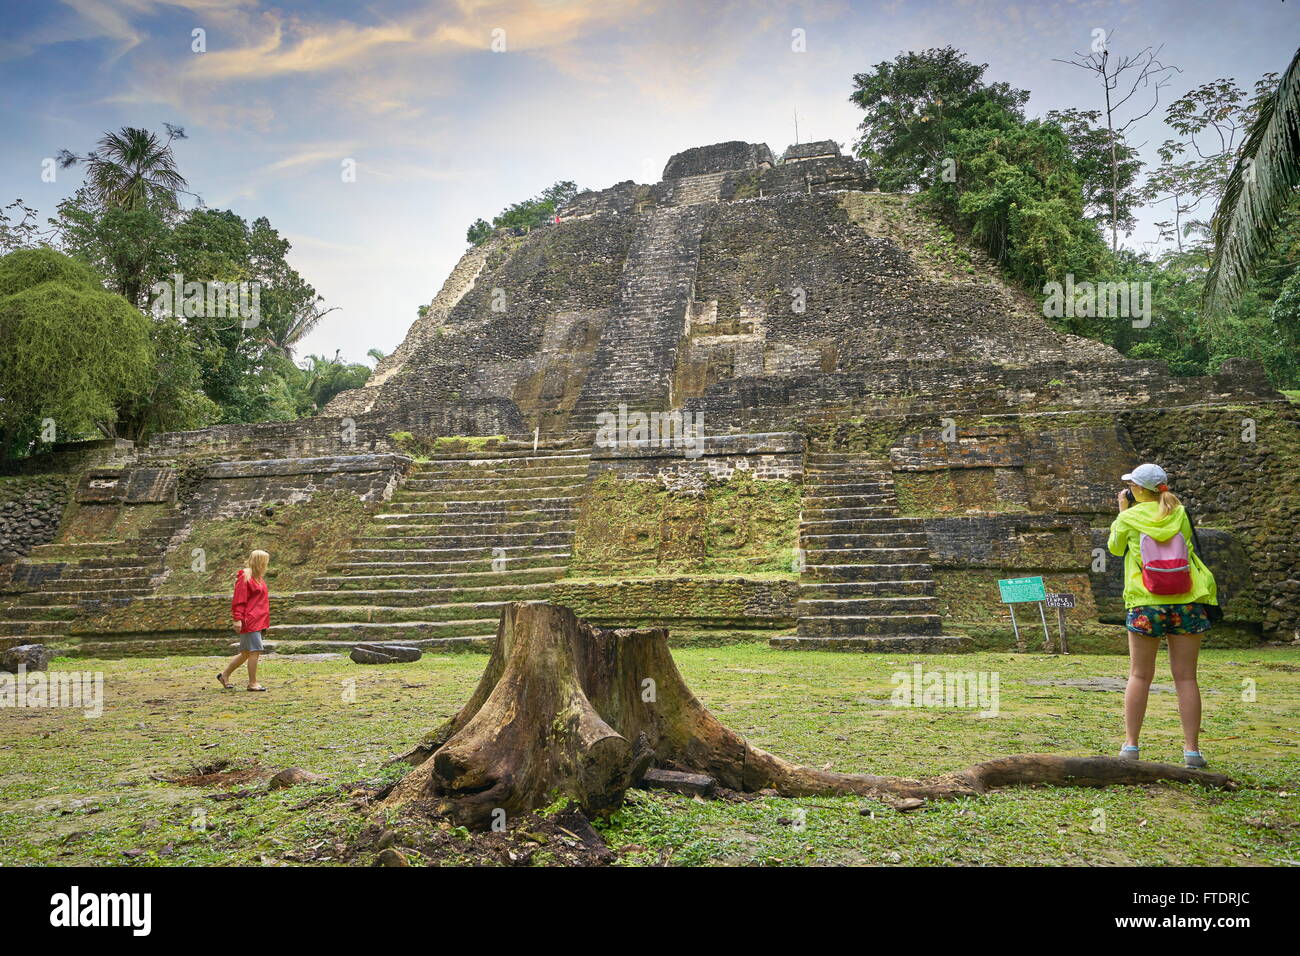 Le plus haut Temple (temple de Lamanai), Ancien, ruines Mayas Lamanai, Belize Banque D'Images